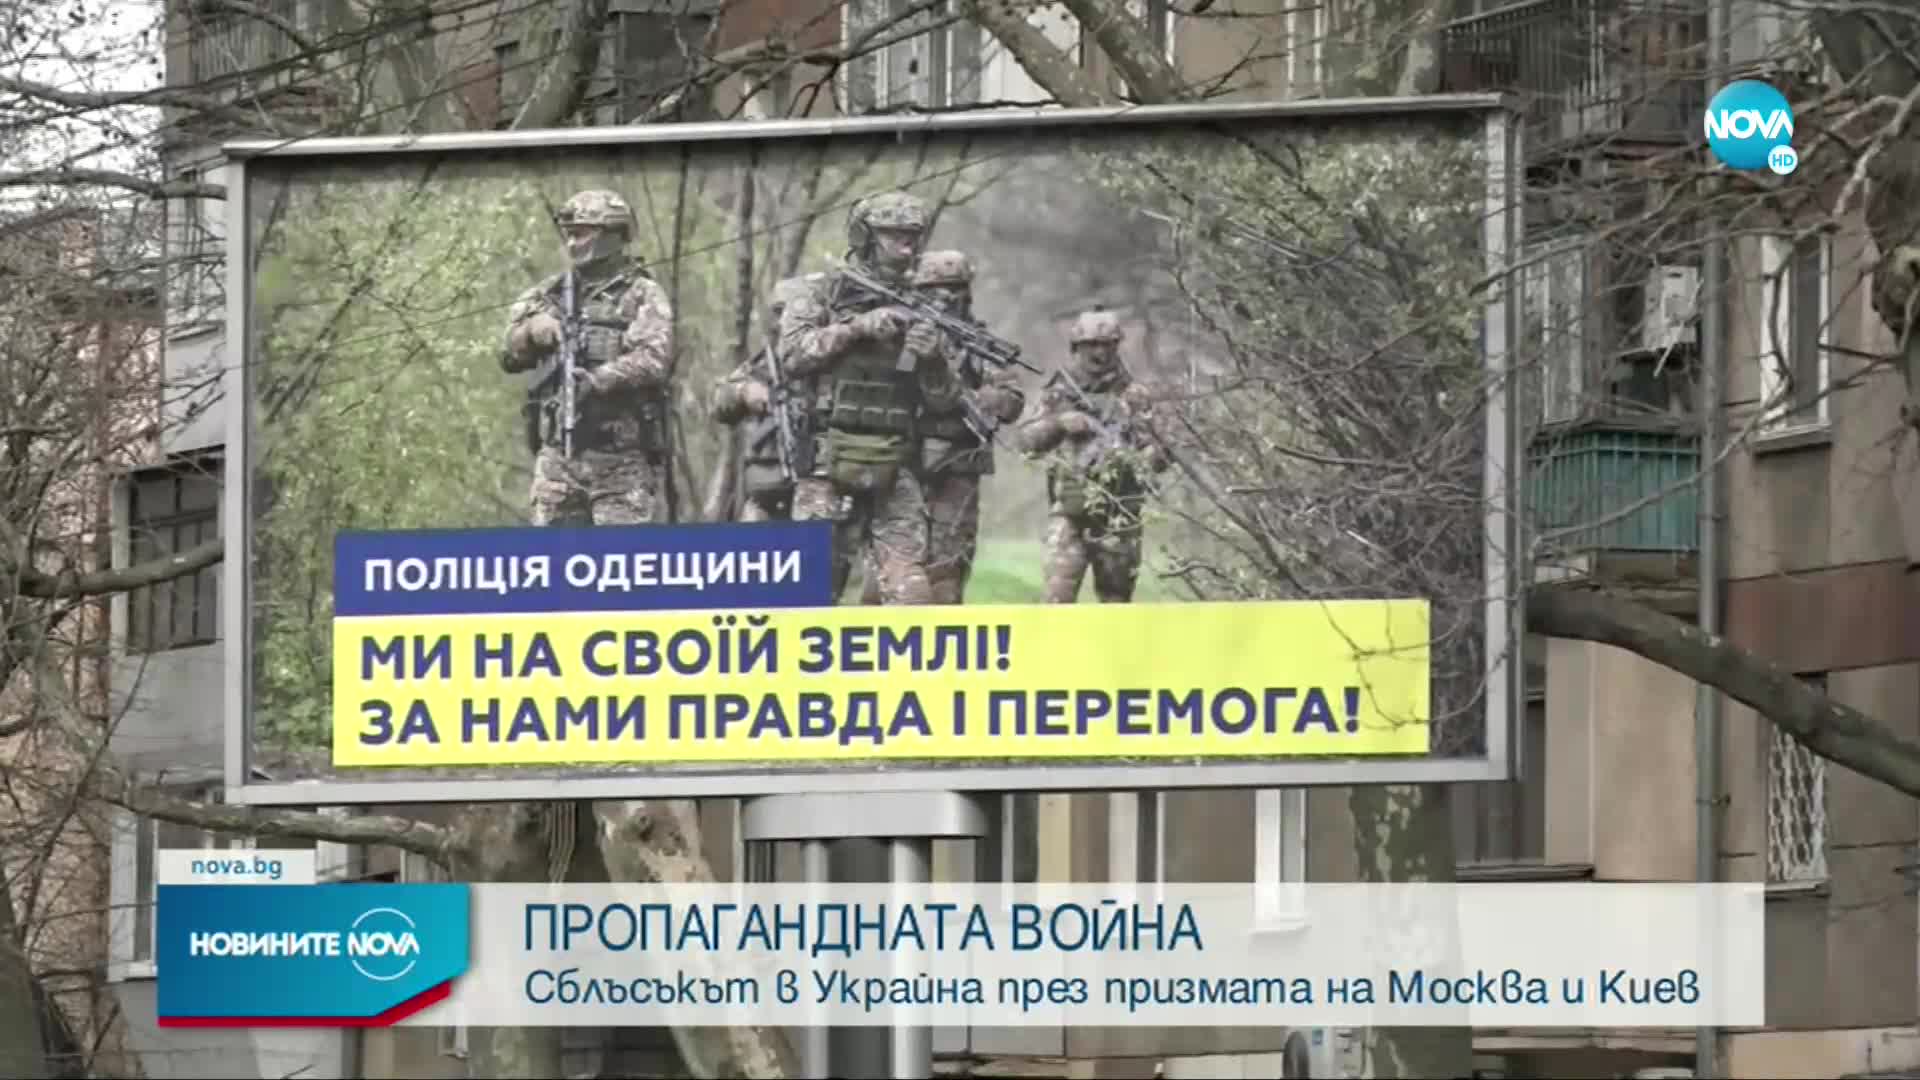 ПРОПАГАНДНАТА ВОЙНА: Сблъсъкът в Украйна през призмата на Москва и Киев